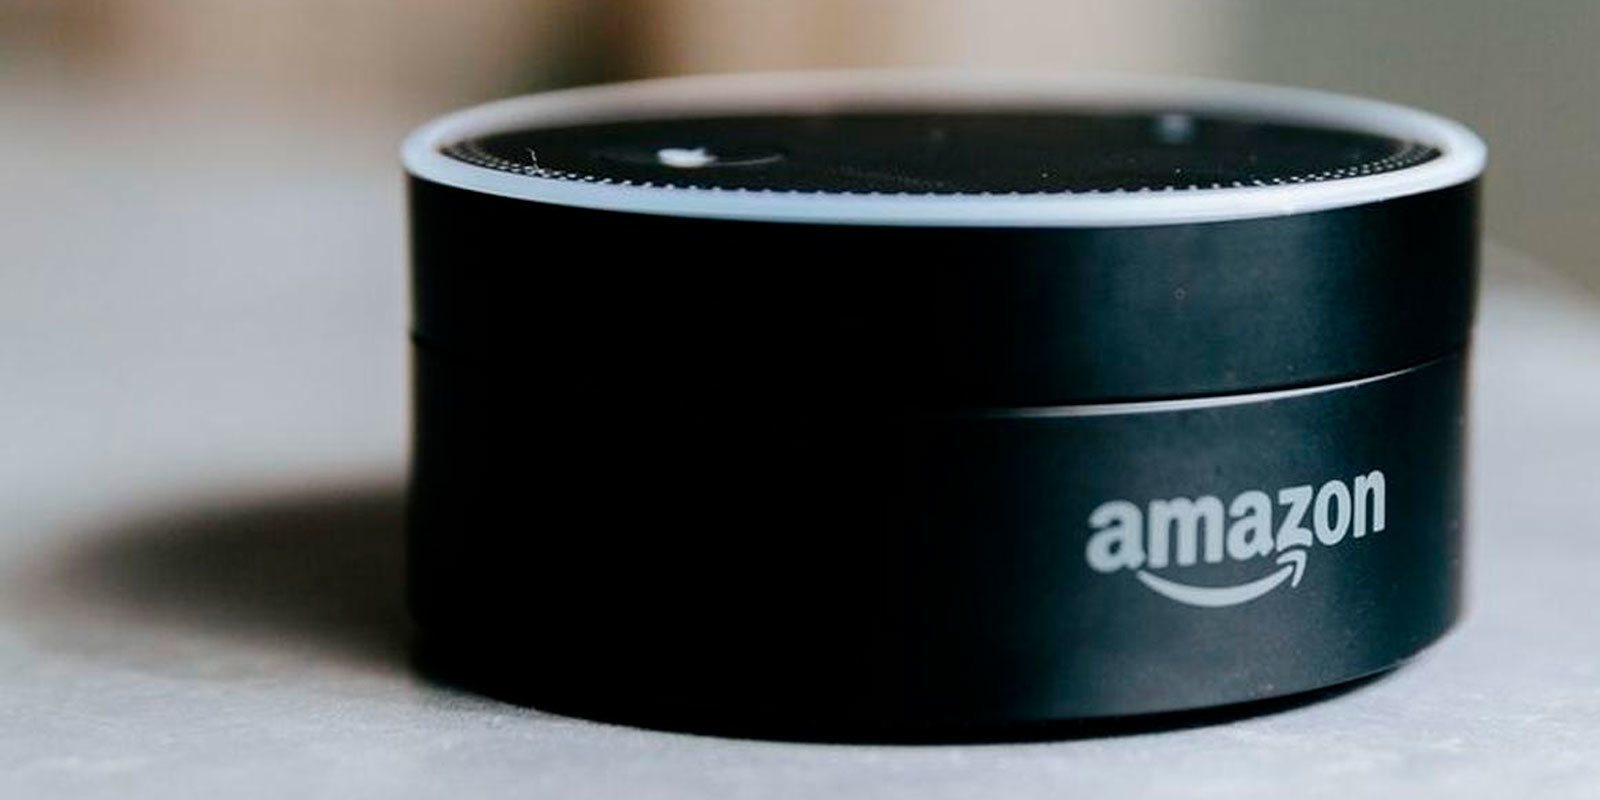 Amazon promete solucionar la risa siniestra de Alexa, su asistente virtual